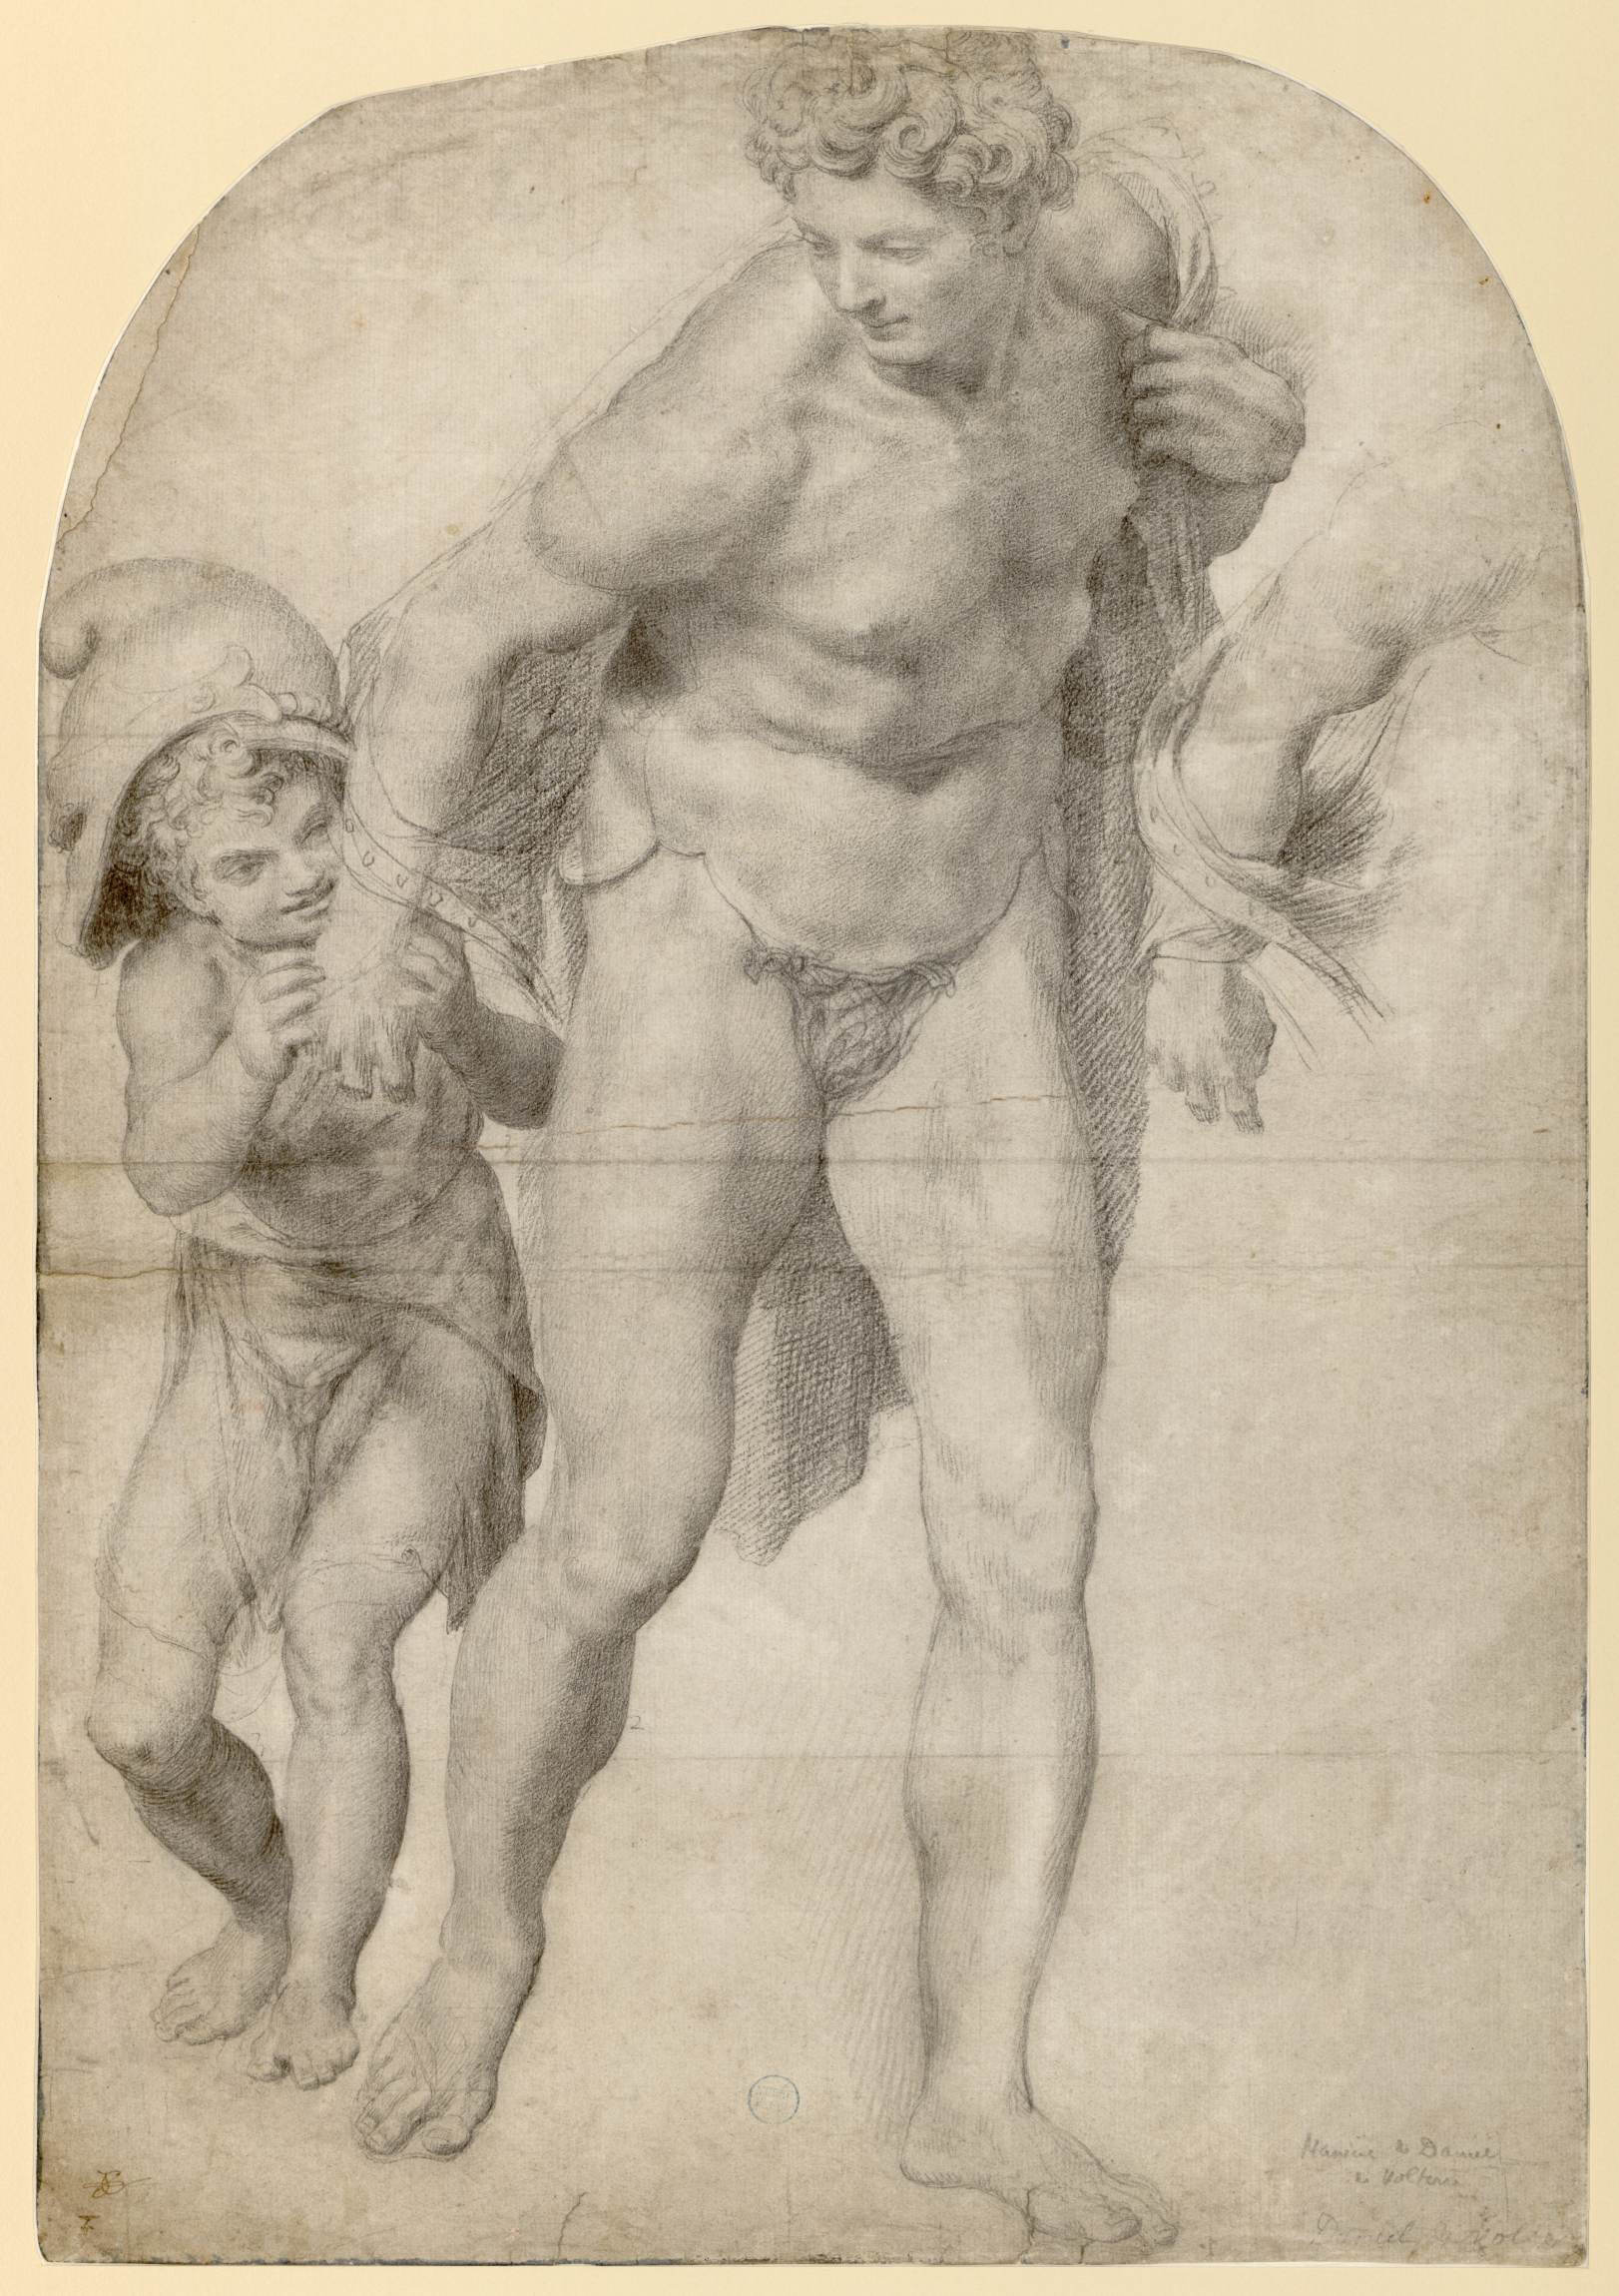 Étude d'un homme en pied, reprise de son bras droit, avec un enfant portant un casque sur sa tête, lui tenant sa main droite